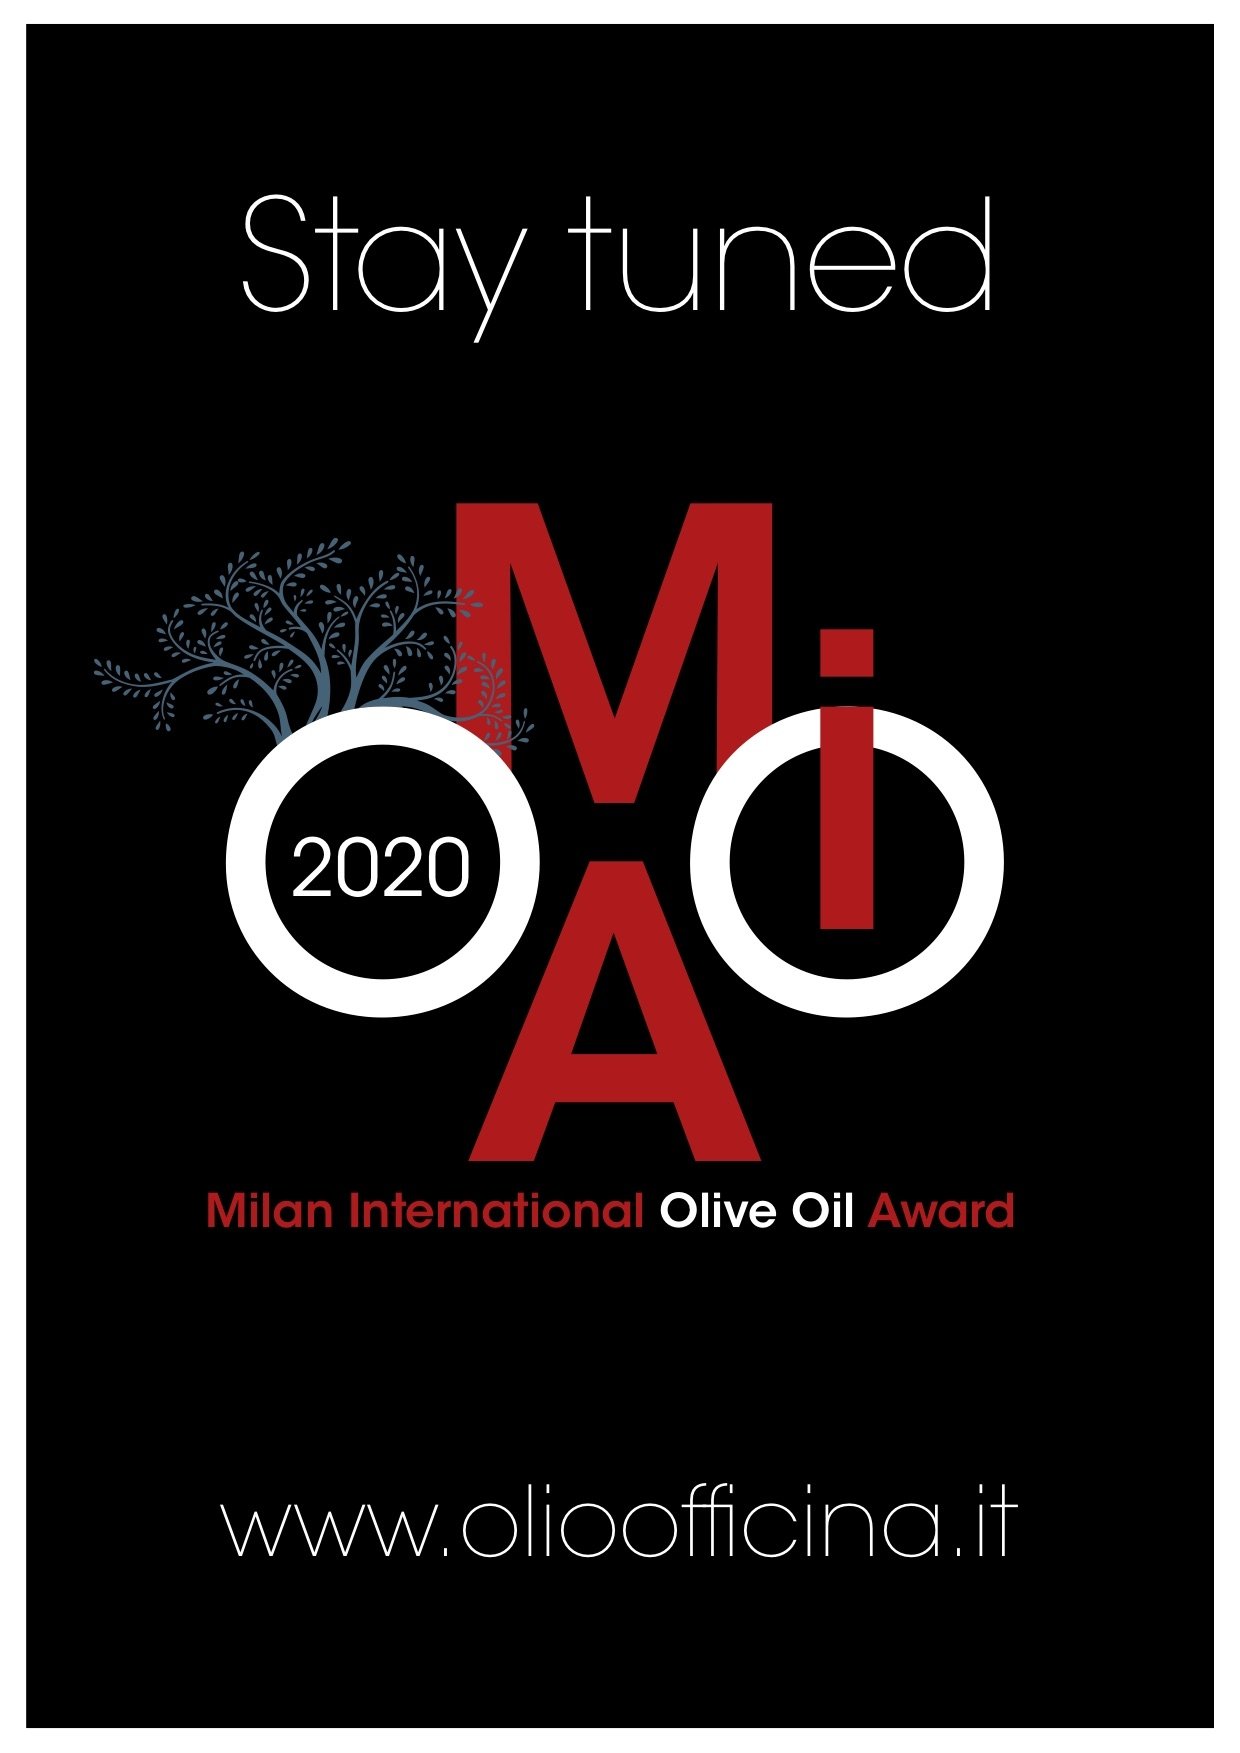 La qualità degli extra vergini della nuova olivagione in concorso al Milan International Olive Oil Award